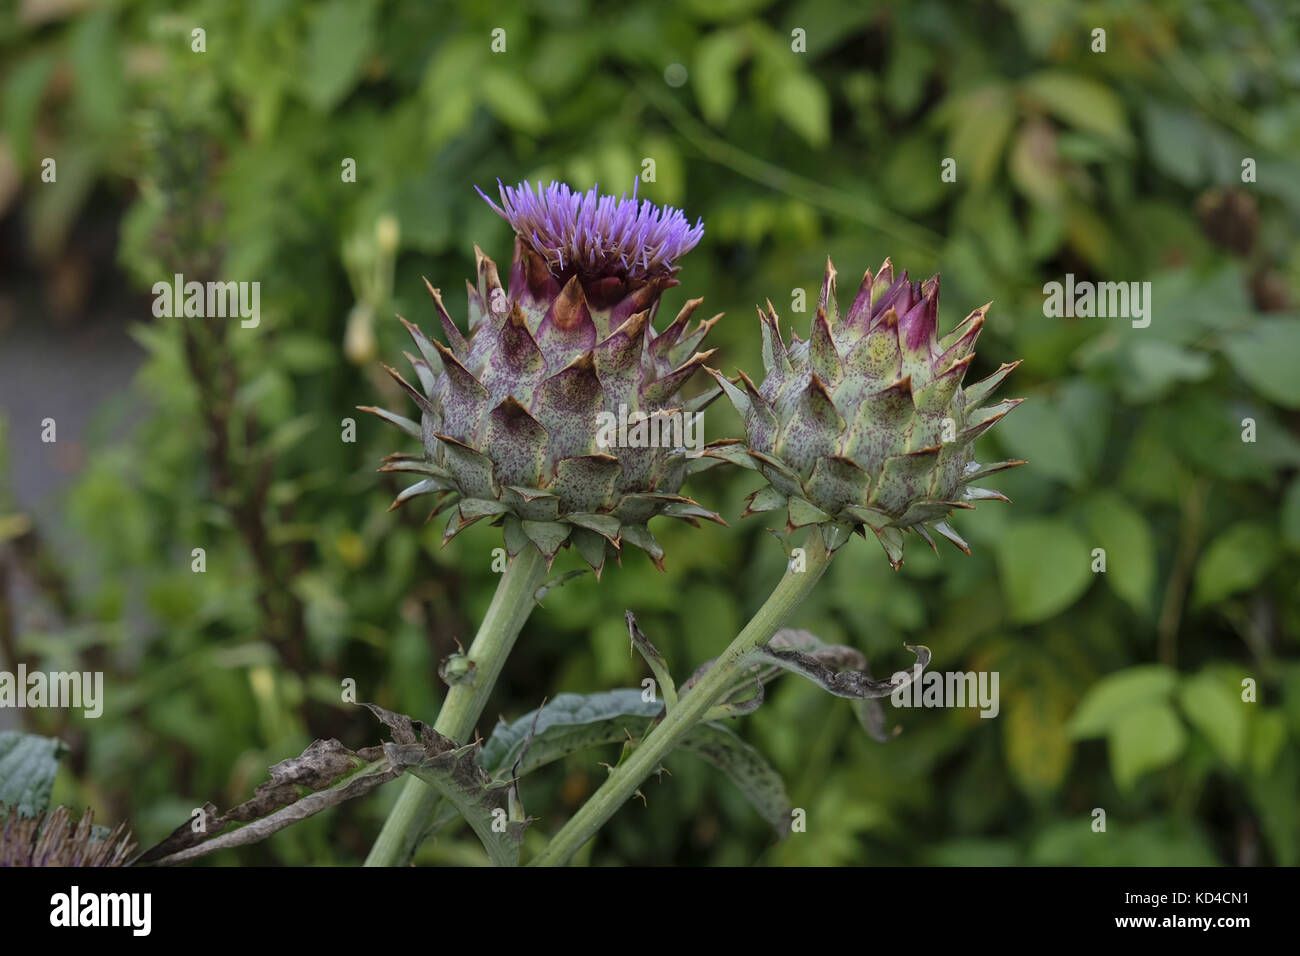 Flower of artichoke Stock Photo